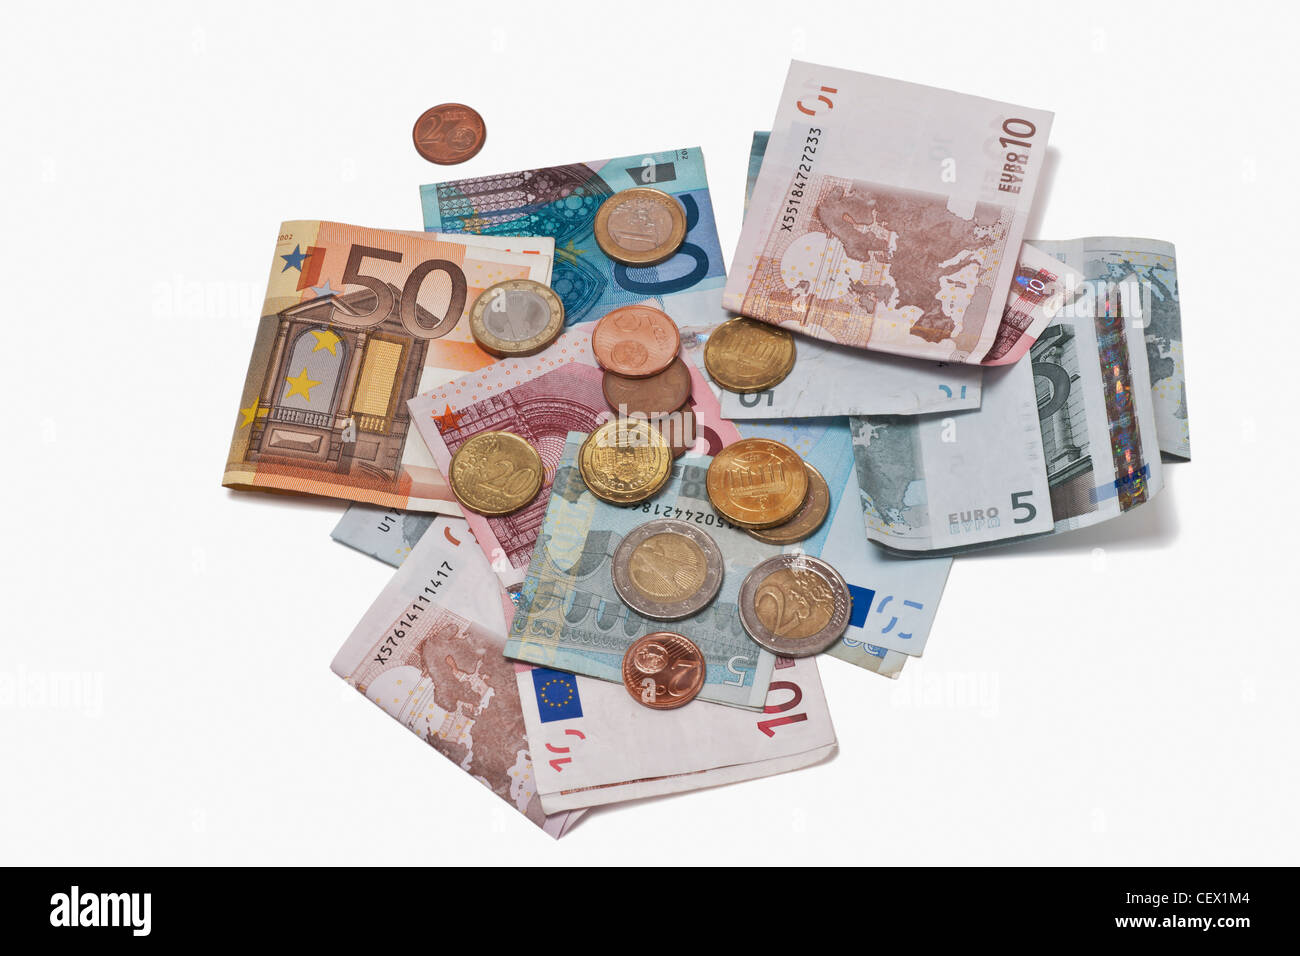 Molti Euro banconote e monete metalliche in euro affiancati. Il 01 gennaio 2002 l'Euro è stato introdotto come denaro contante. Foto Stock